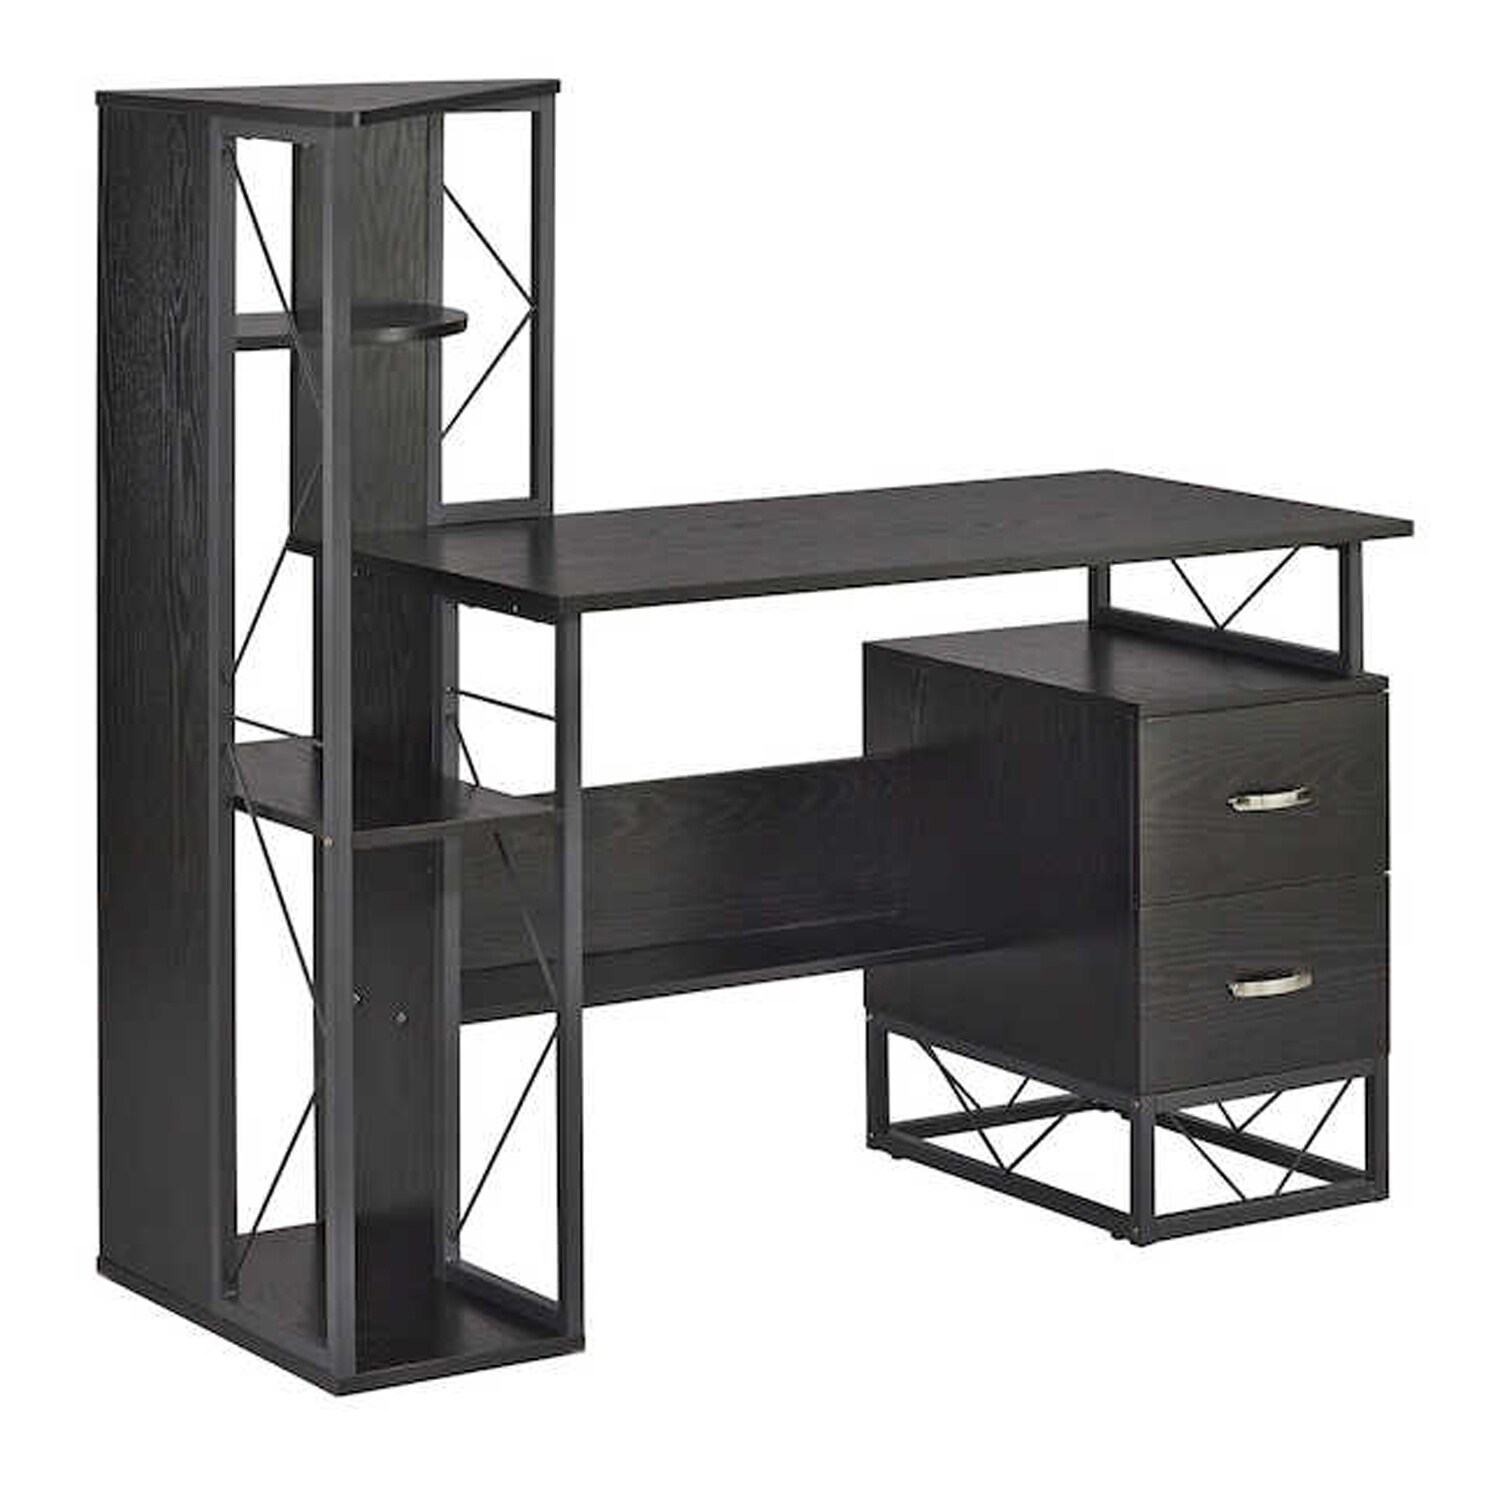 Shop Safco Soho Textured Laminate 2 Drawer Pedestal Storage Desk